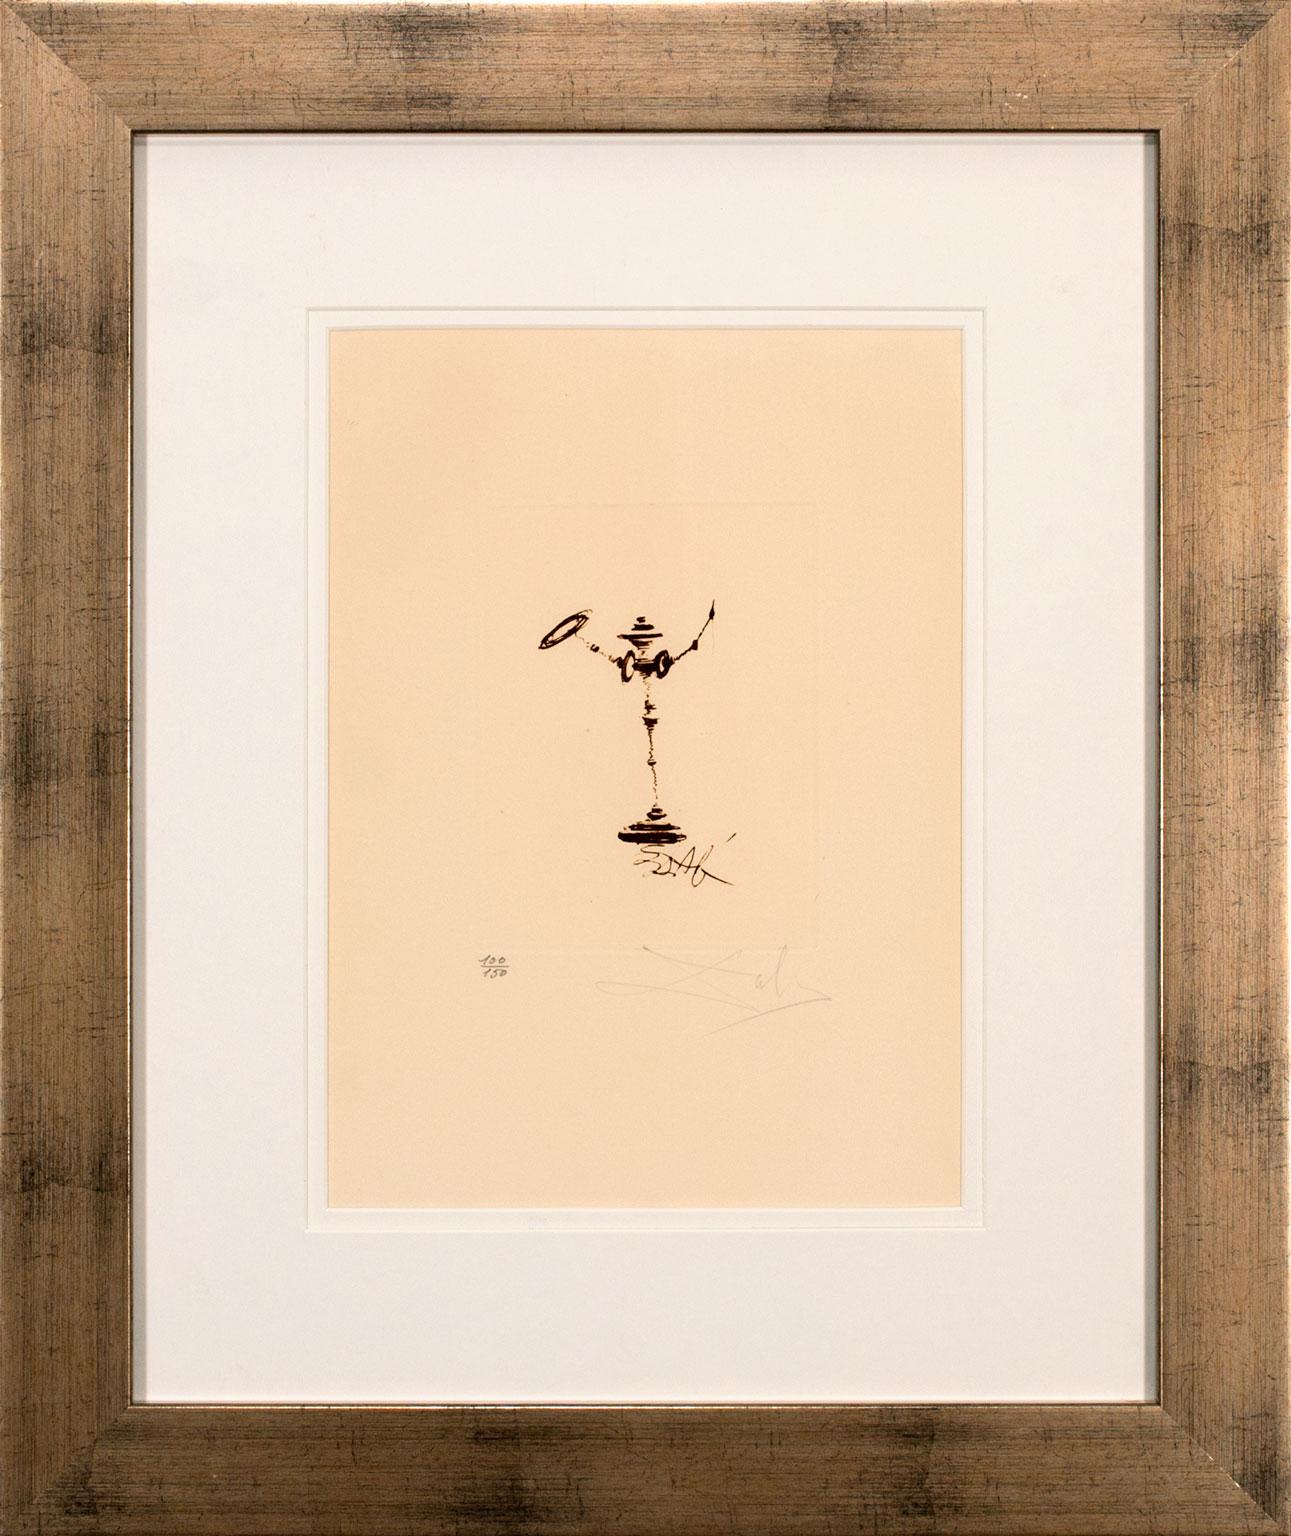 Salvador Dalí Figurative Print – Don Quixote" Gerahmte:: handsignierte Radierung in limitierter Auflage von Salvador Dal